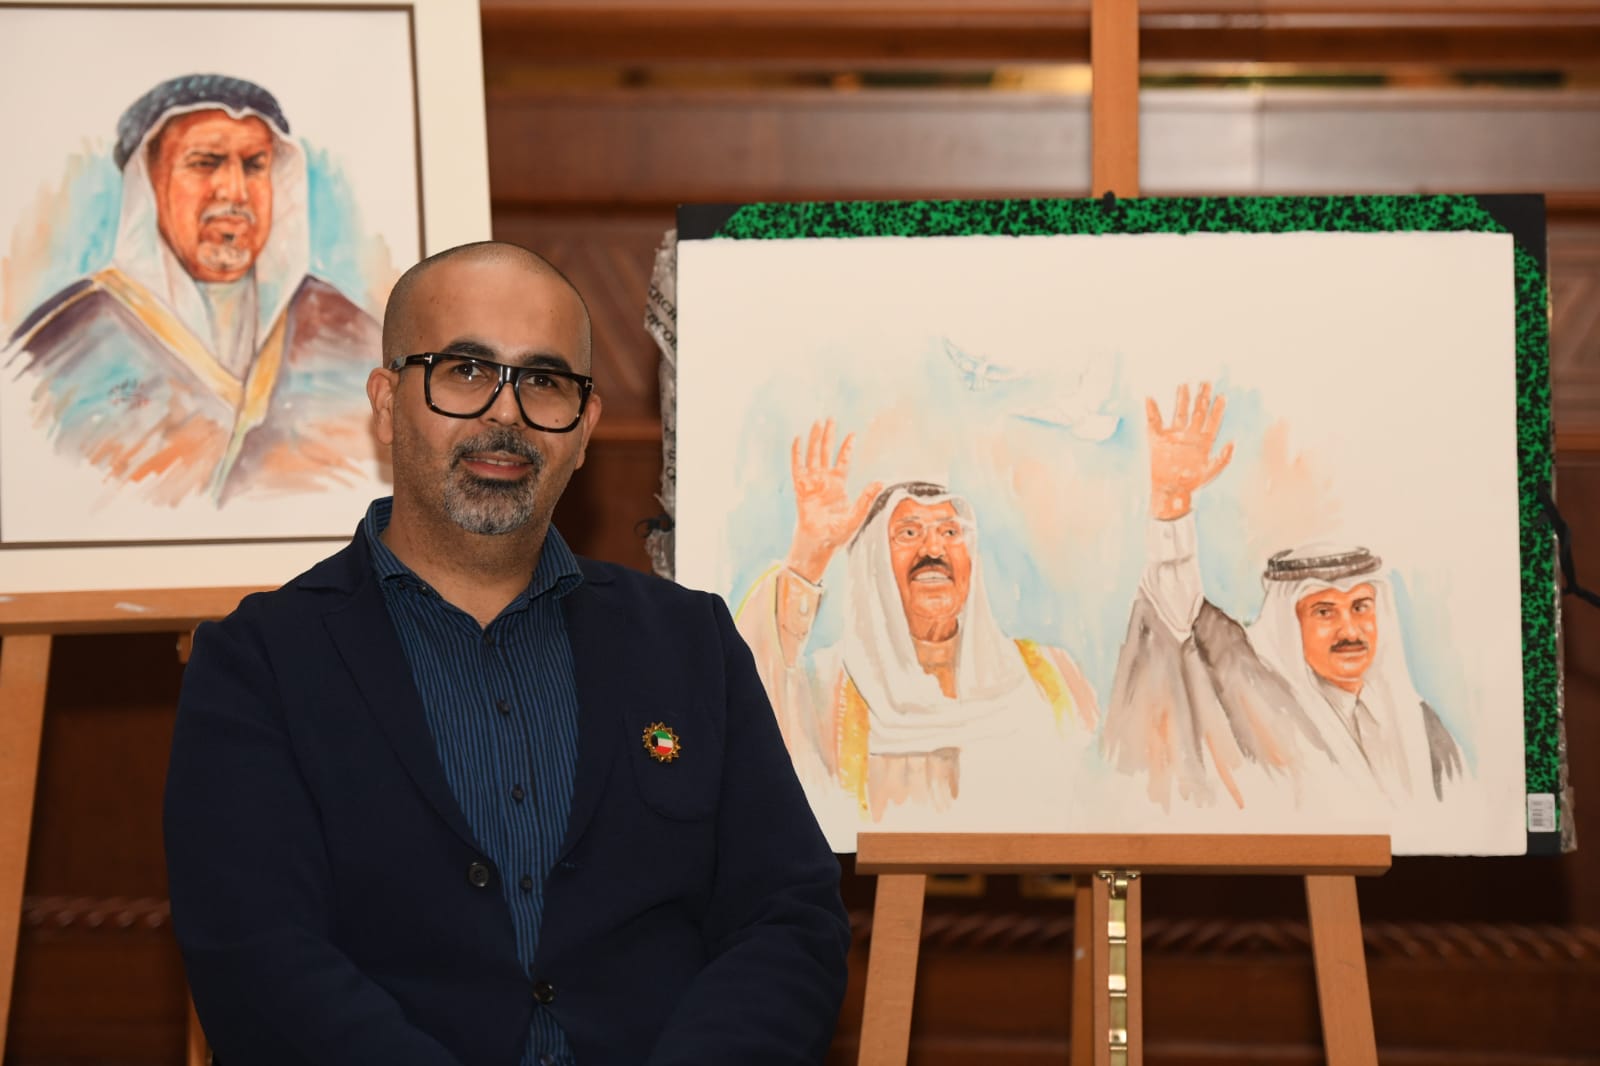 لوحات فنية لحكام الكويت وقطر تزين حفل سفارة الكويت لدى قطر 